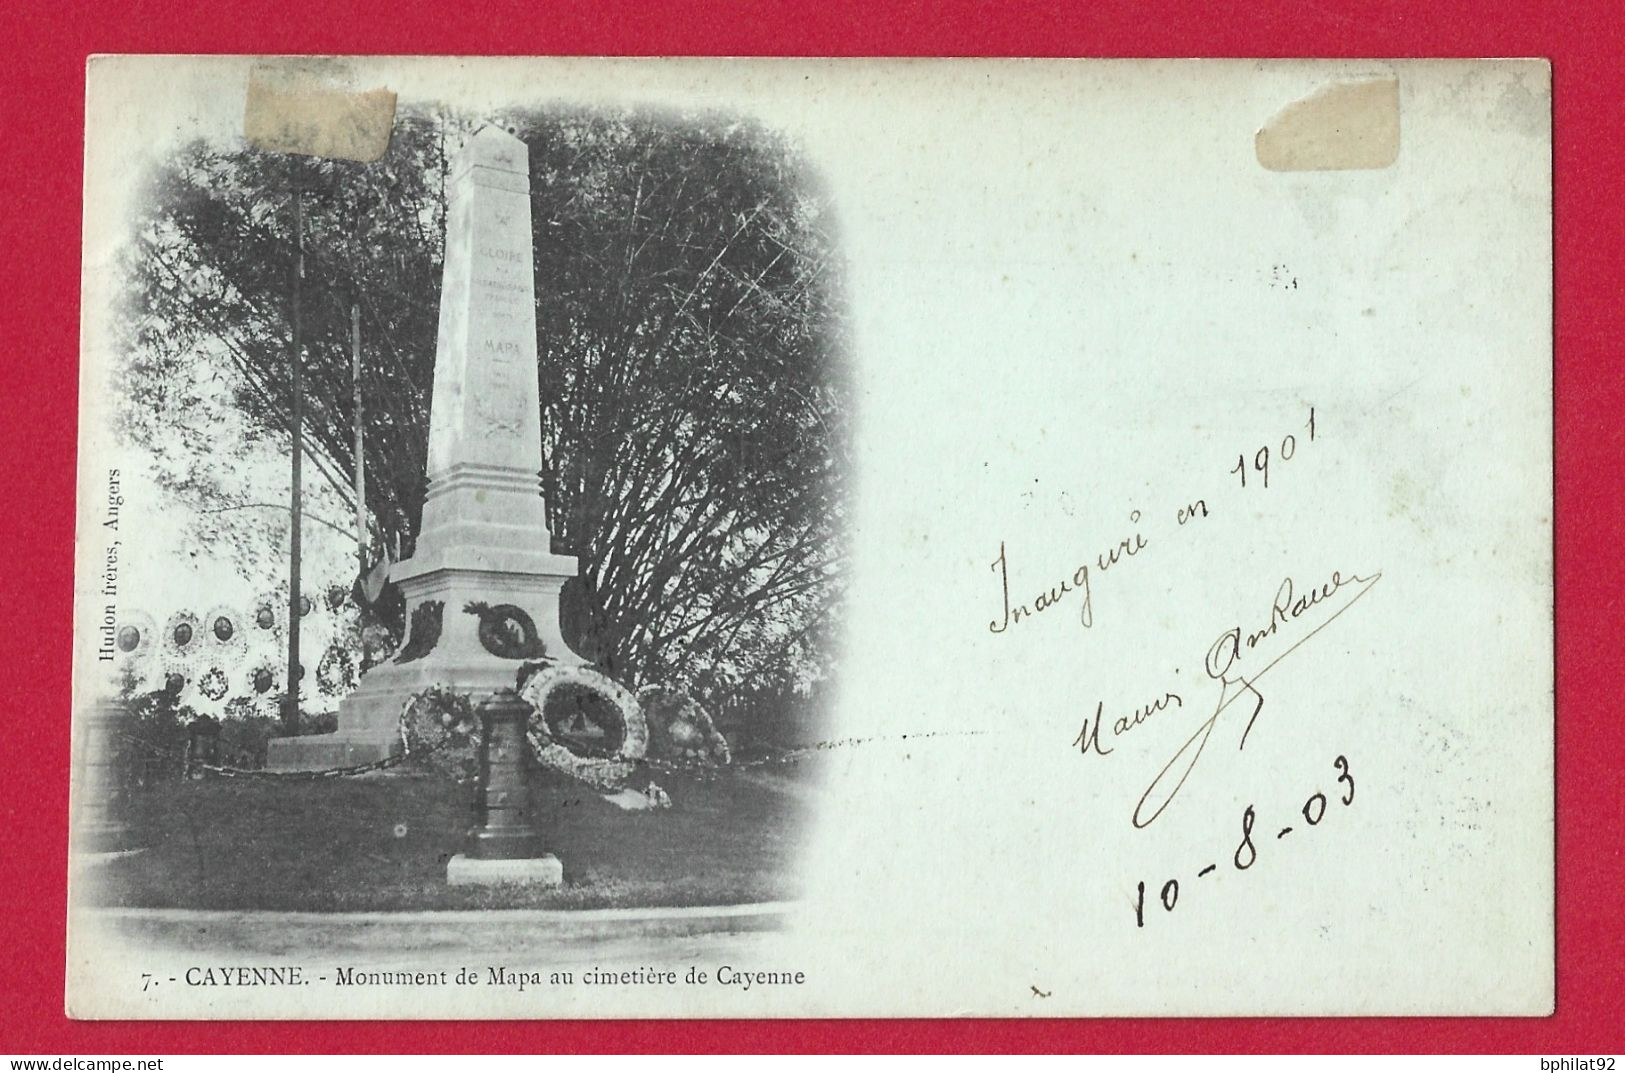 !!! GUYANE, CPA DE CAYENNE, CACHET DE SAINT LAURENT DU MARONI POUR PARIS DE 1903 AVEC AFFRANCHISSEMENT TYPE GROUPE - Storia Postale